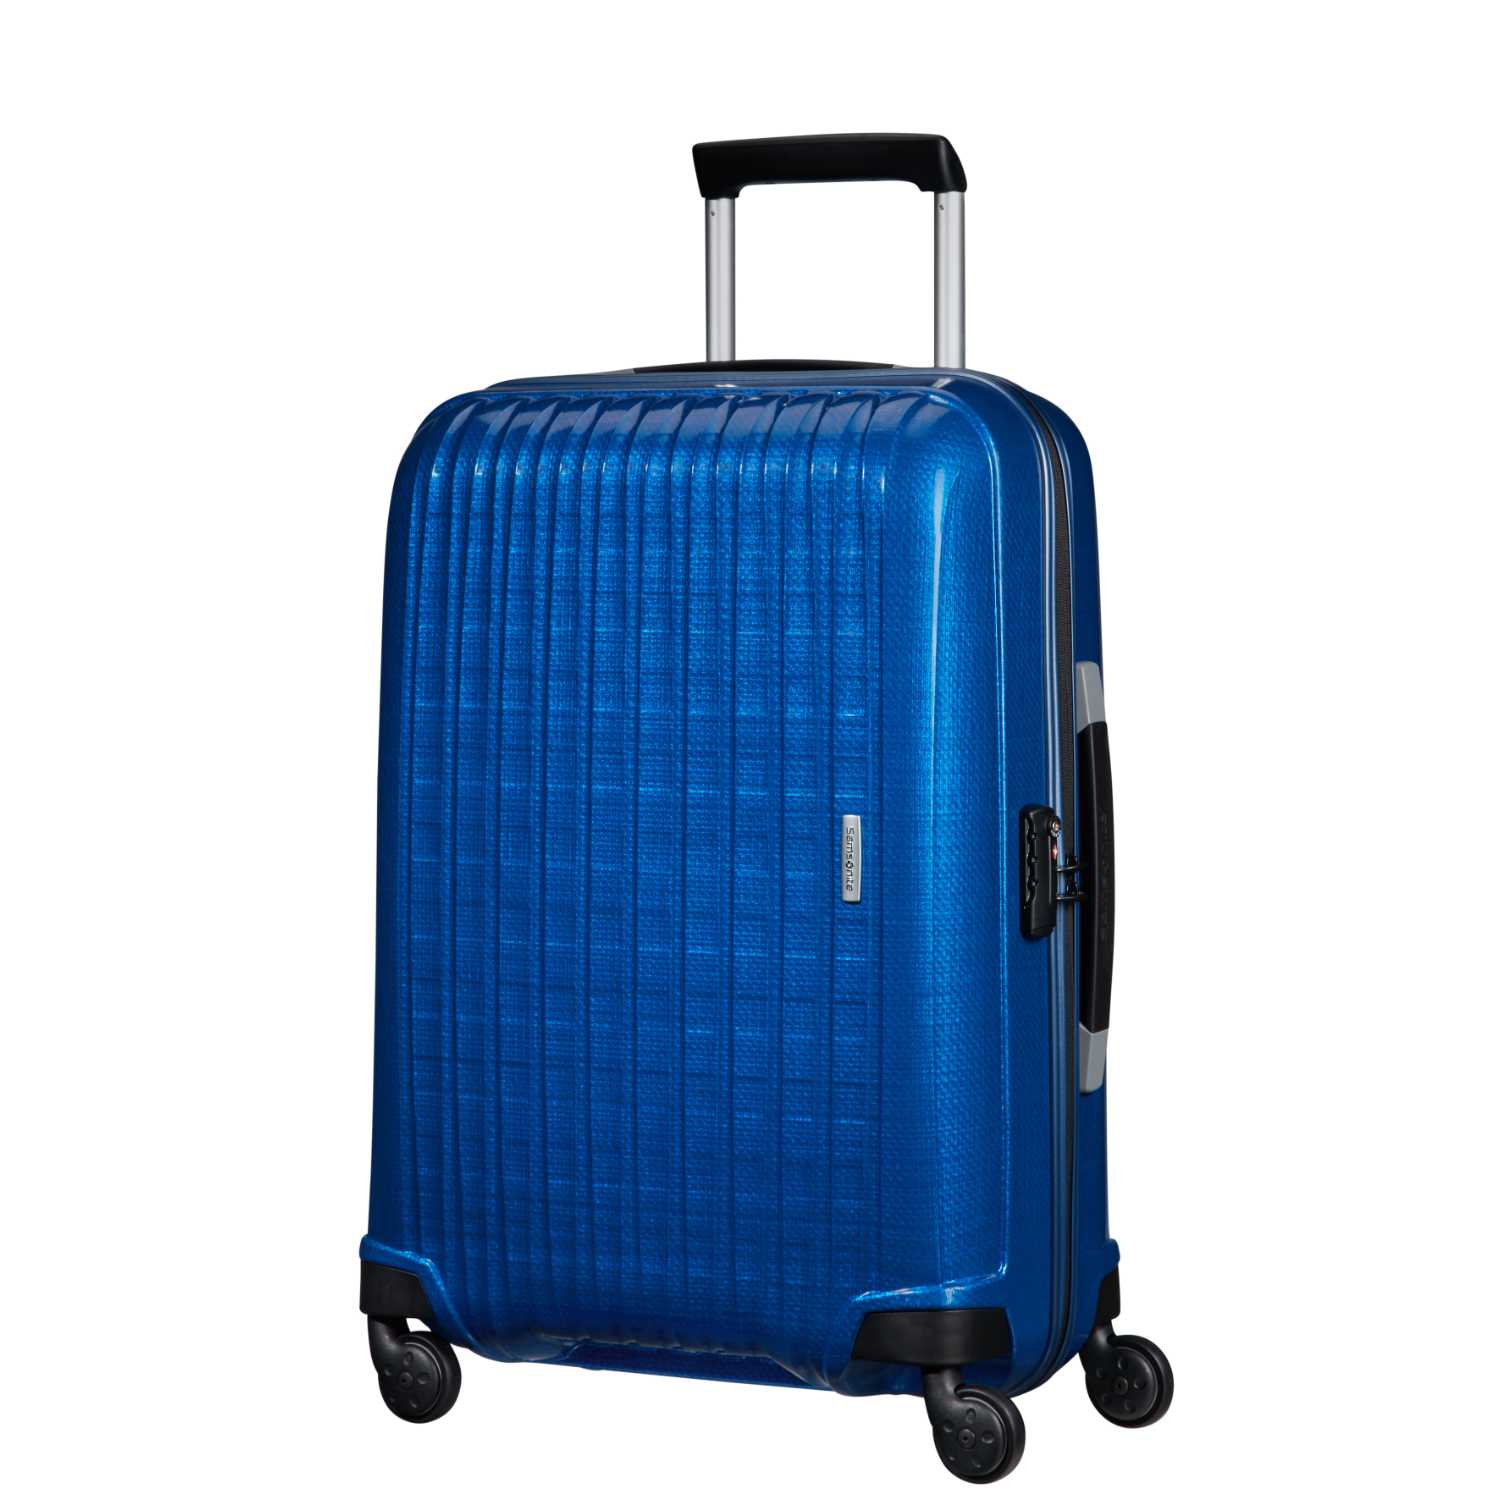 SAMSONITE (TRAVEL) – Βαλίτσα ταξιδιού SAMSONITE CHRONOLITE SPINNER 69/25 μπλε